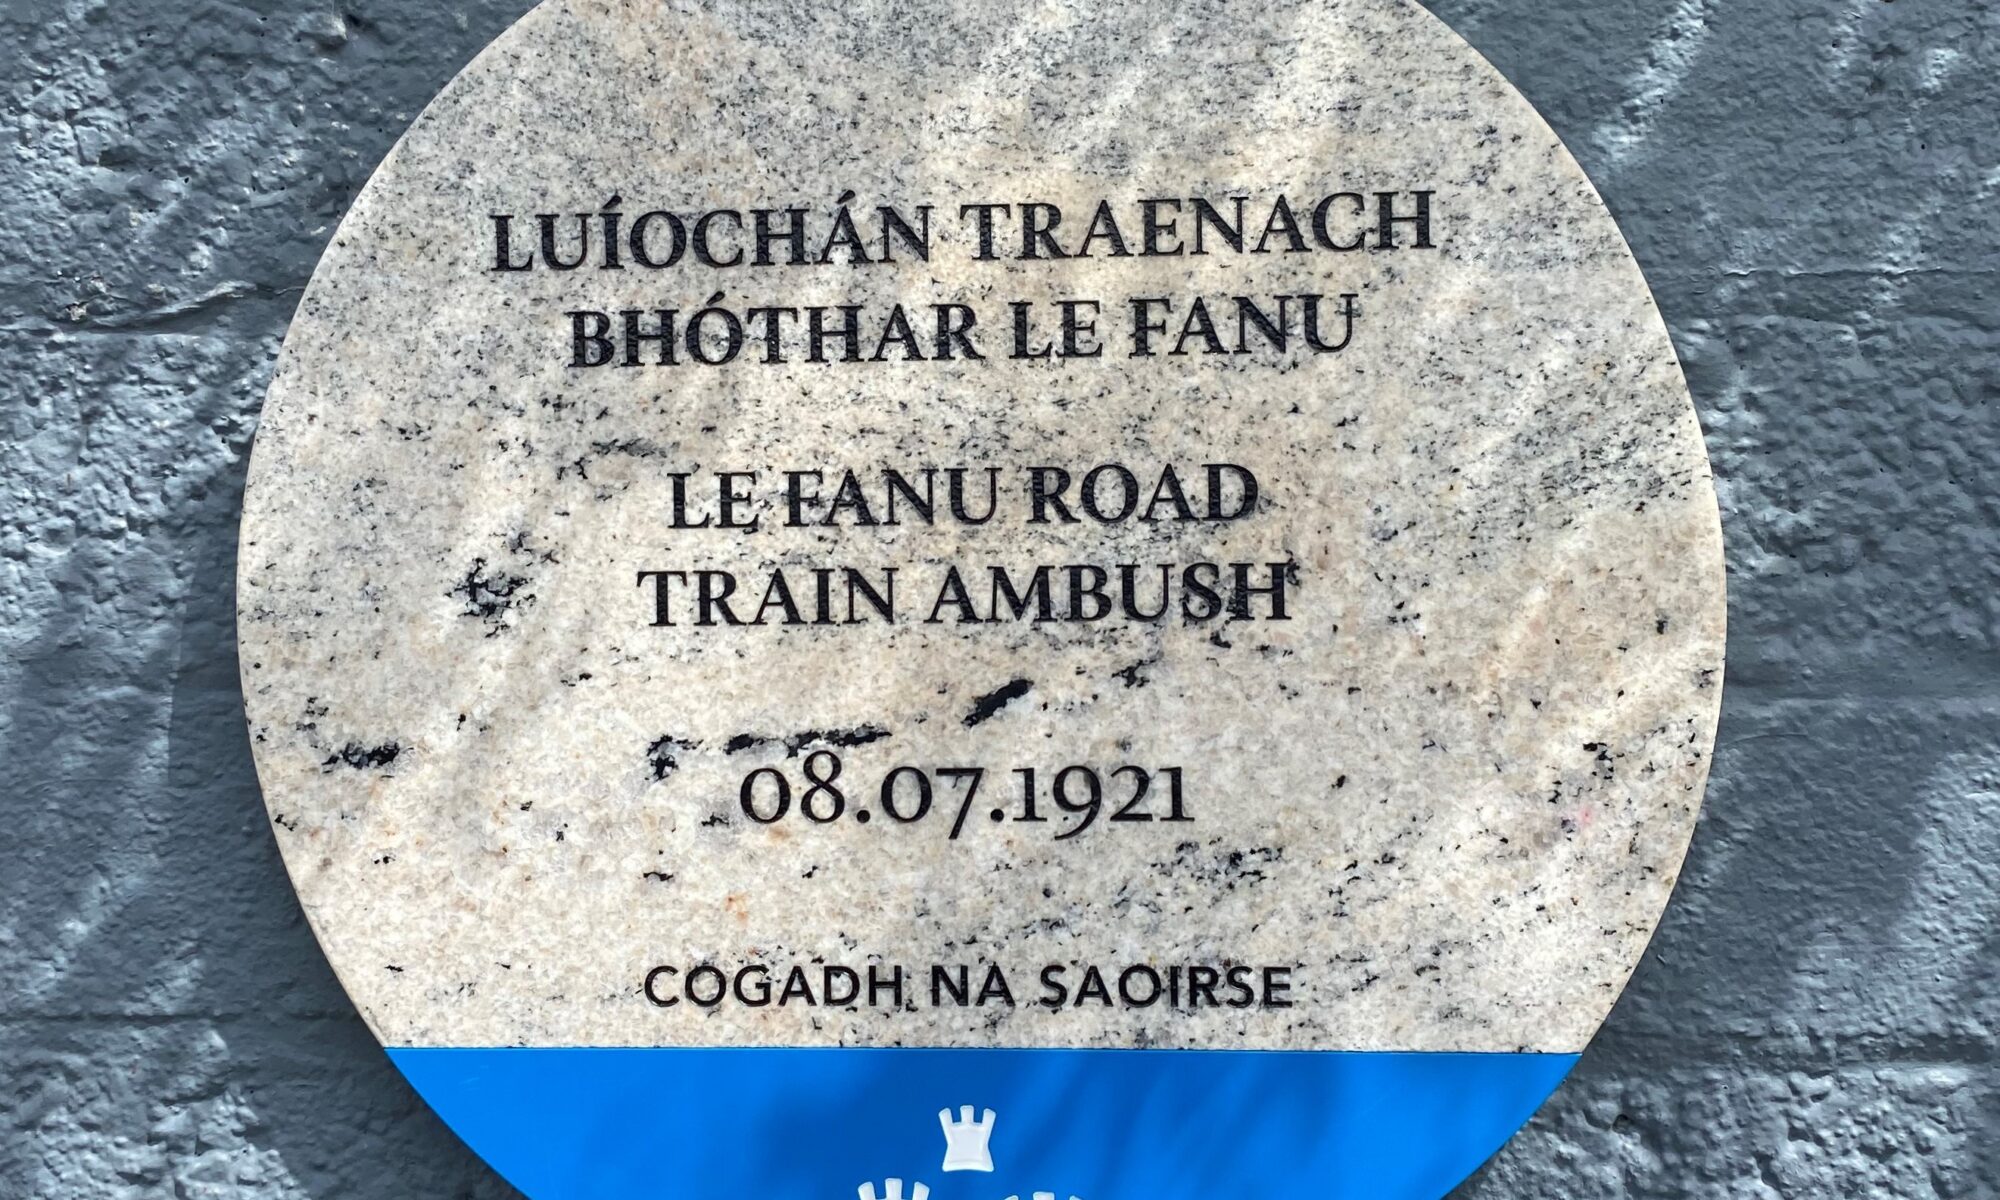 Dublin City Counil commemorative plaque at Ballyfermot